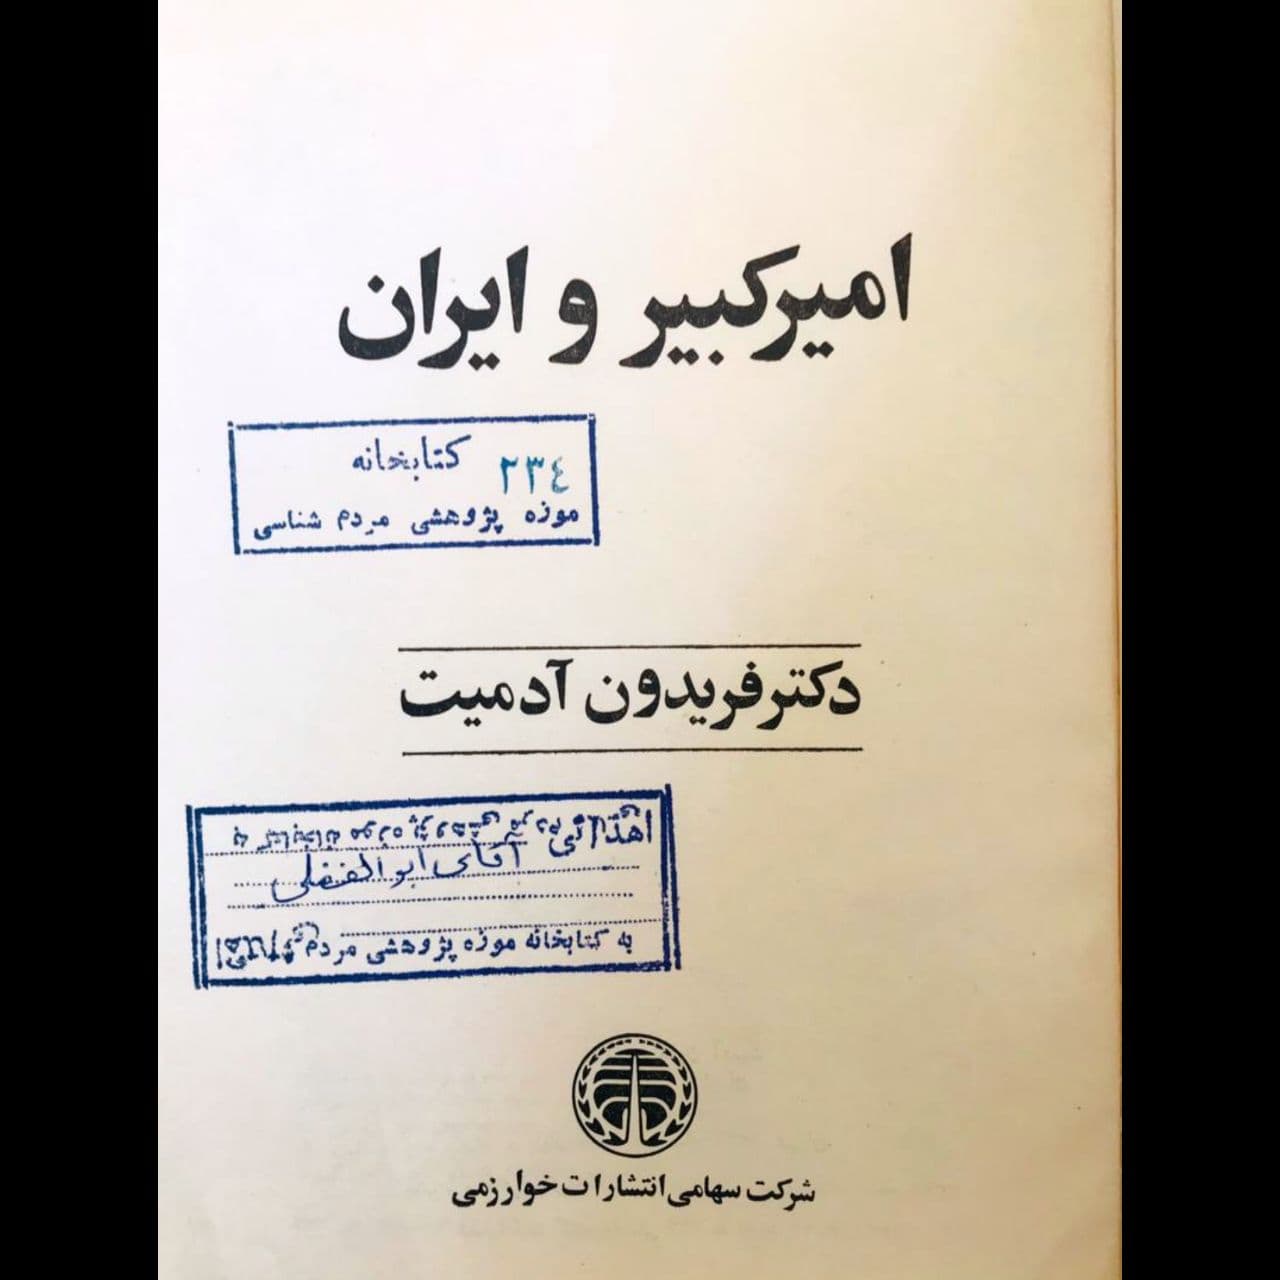 نام کتاب: امیر کبیر و ایران 